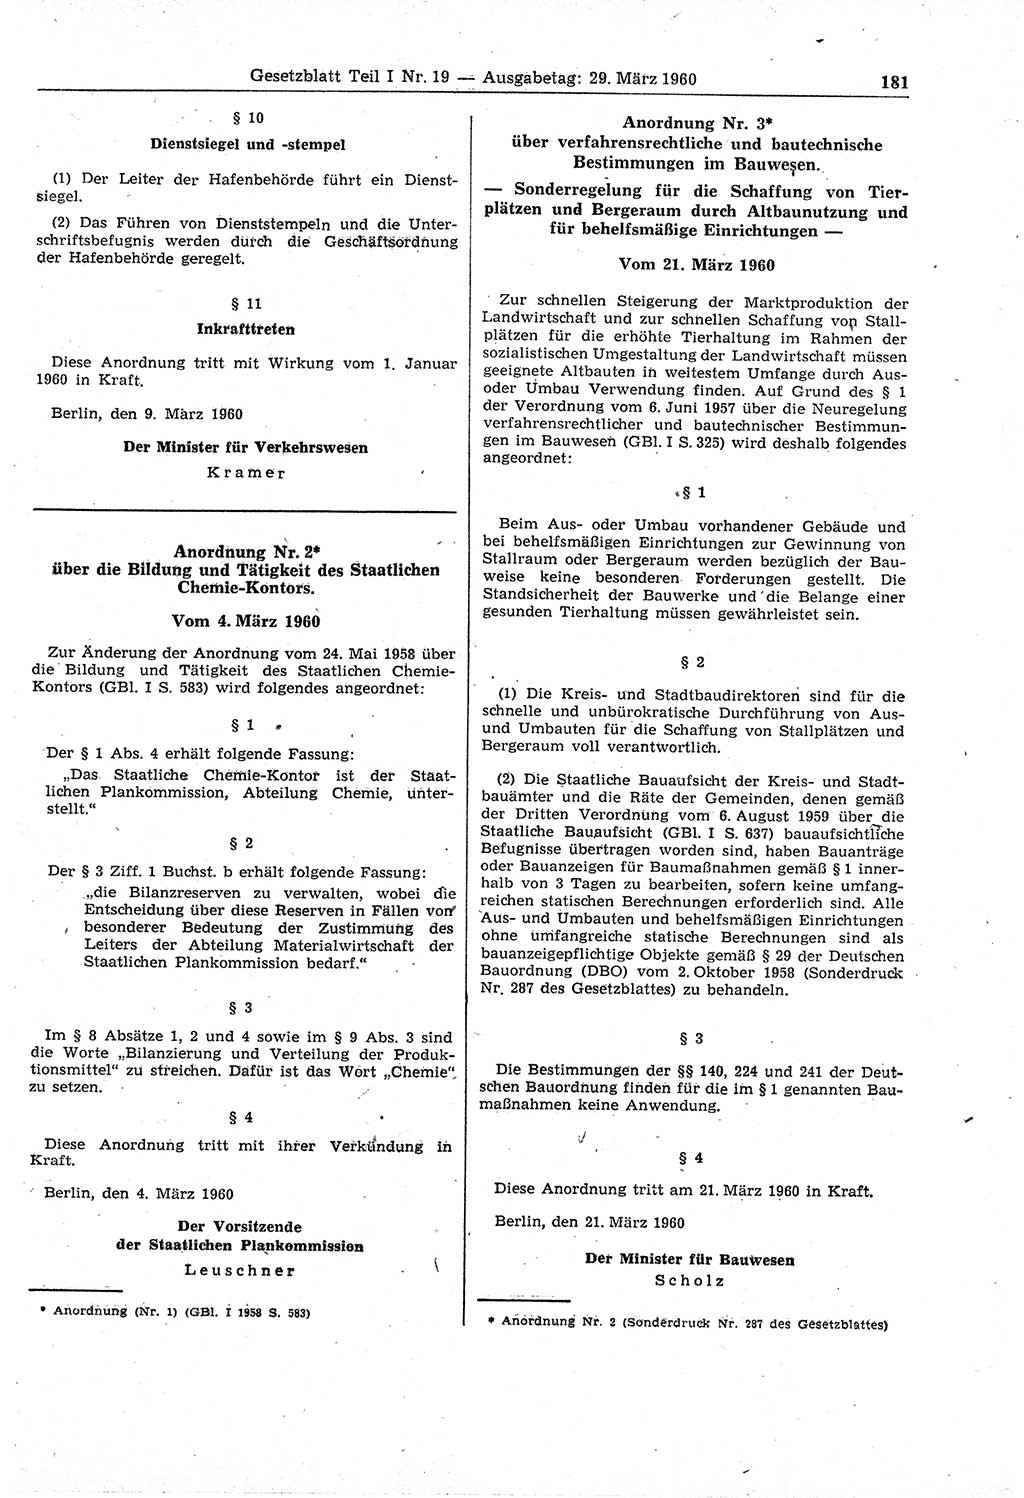 Gesetzblatt (GBl.) der Deutschen Demokratischen Republik (DDR) Teil Ⅰ 1960, Seite 181 (GBl. DDR Ⅰ 1960, S. 181)